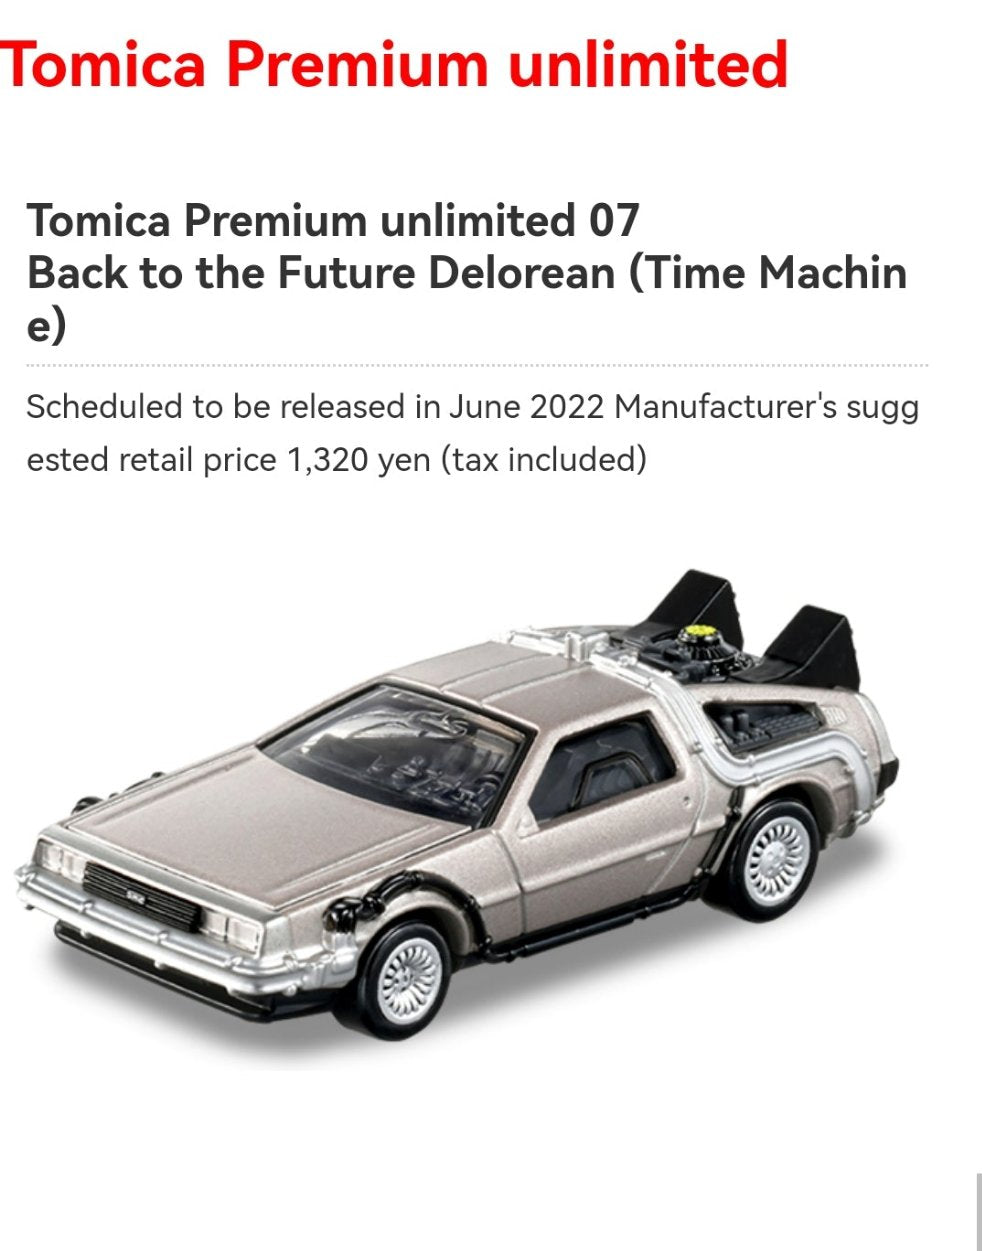 Tomica Premium Unlimited 07 Back to the future Delorean DMC 1:62 Scale Takara Tomy